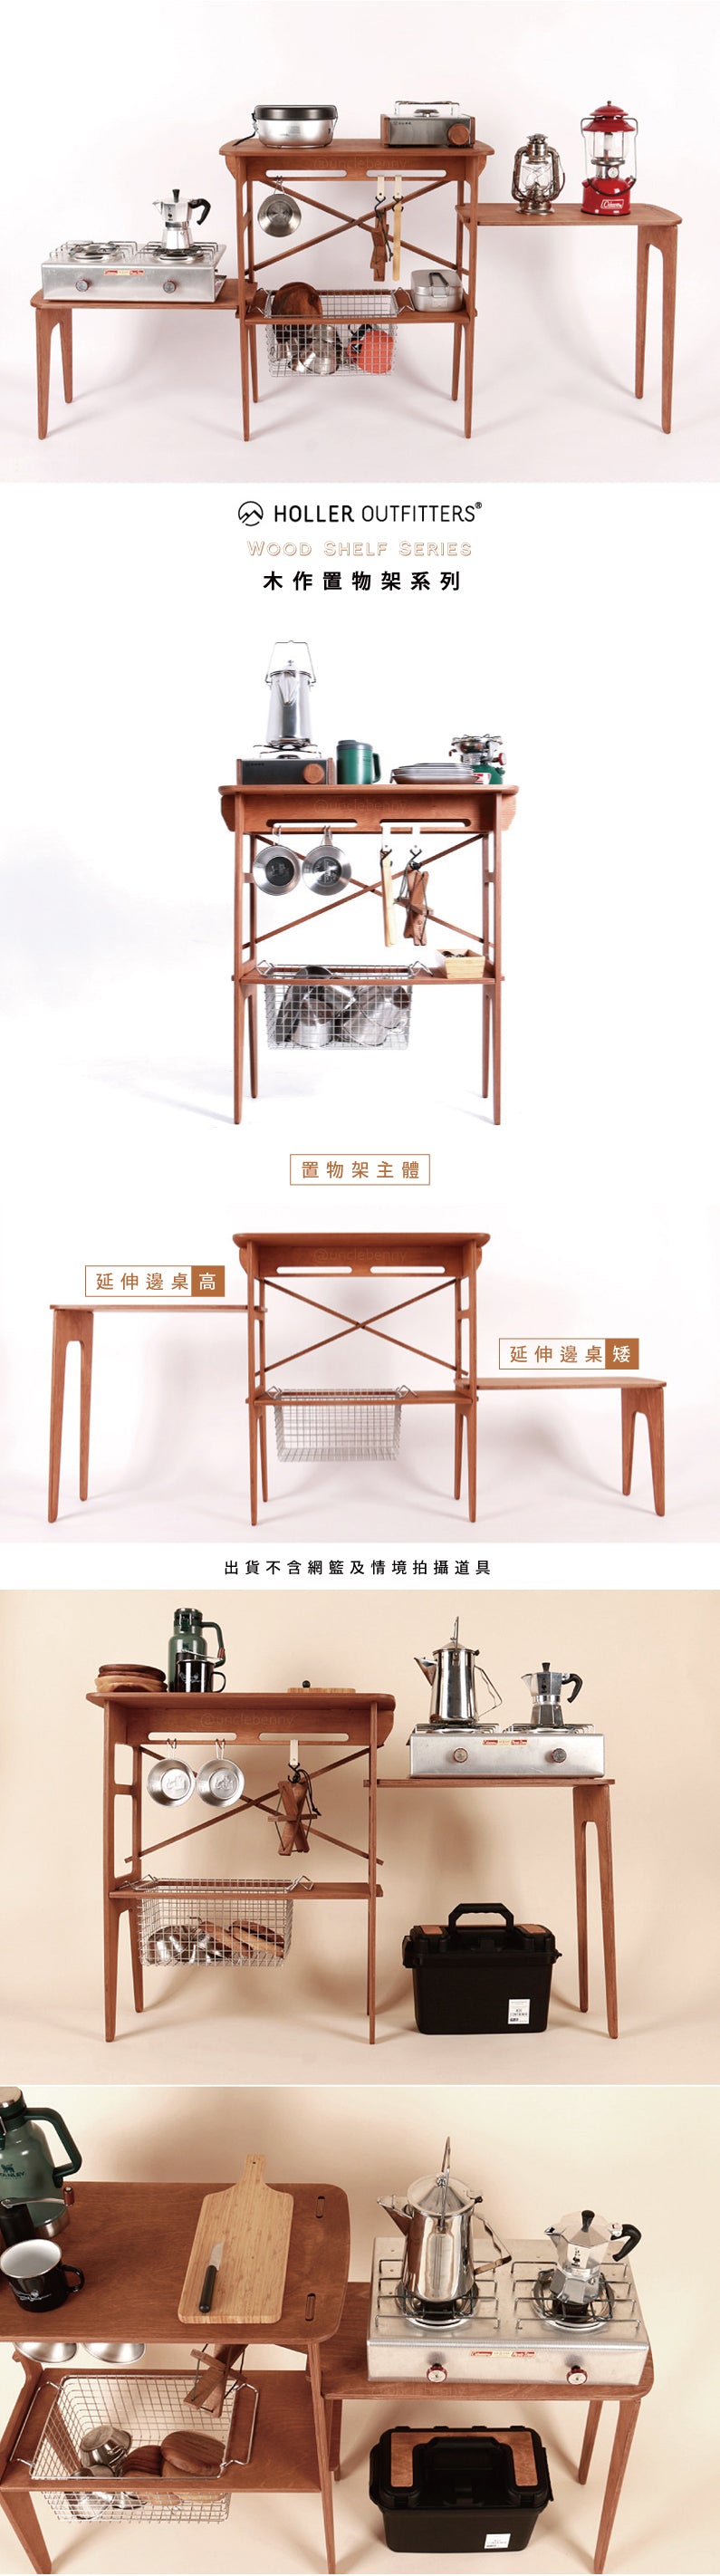 韓國holler • 木作置物架/延伸邊桌系列/戶外廚房/露營廚房